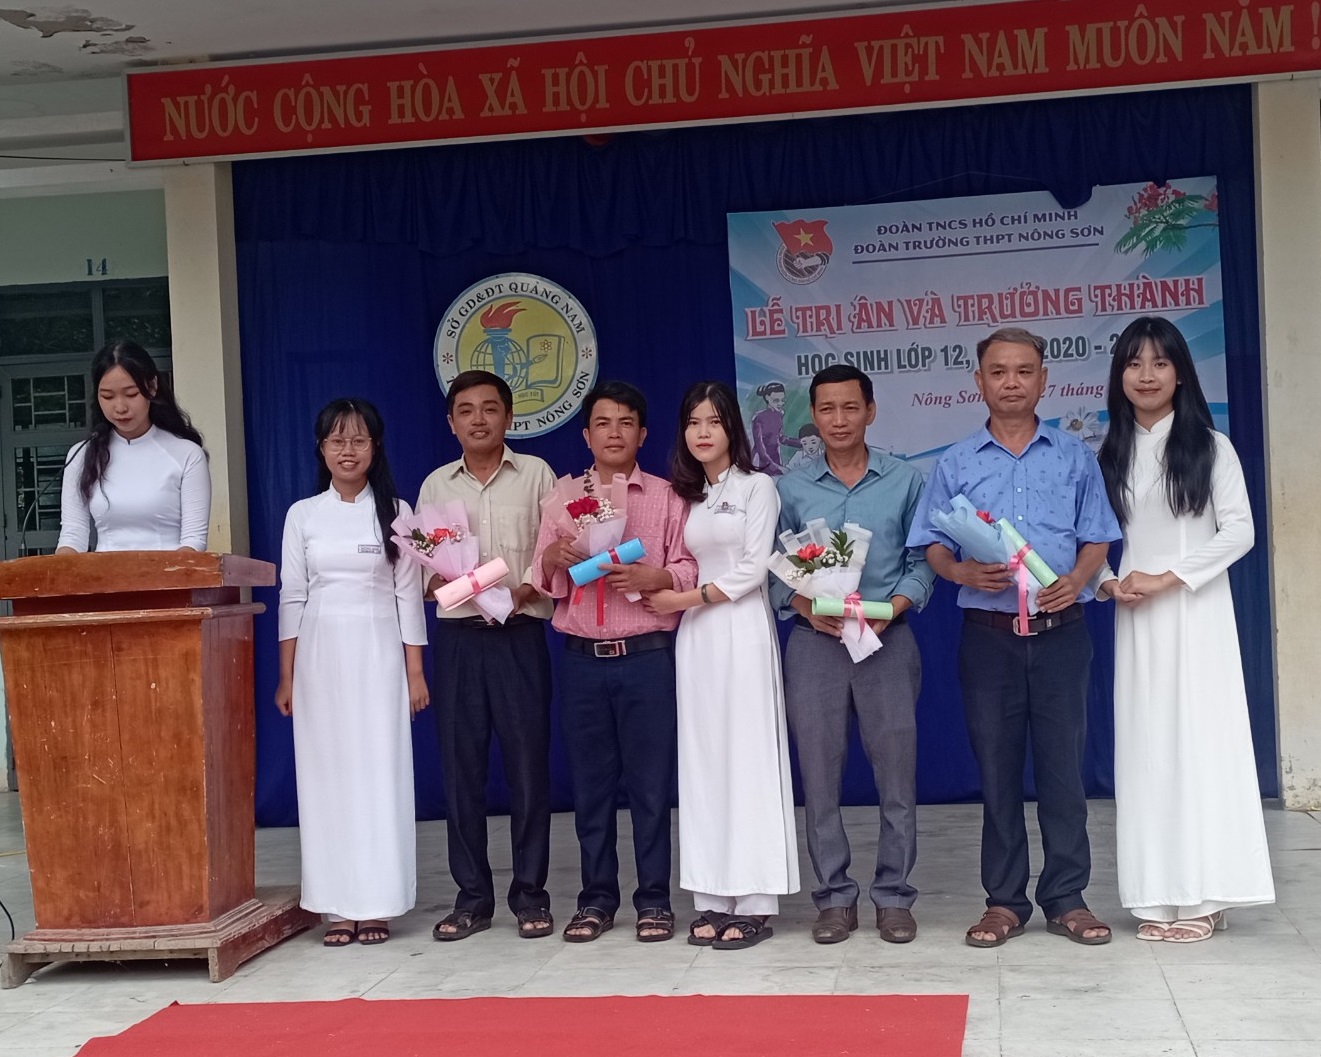 Đoàn trường THPT Nông Sơn tổ chức lễ tri ân và trưởng thành  cho học sinh lớp 12, năm học 2022-2023